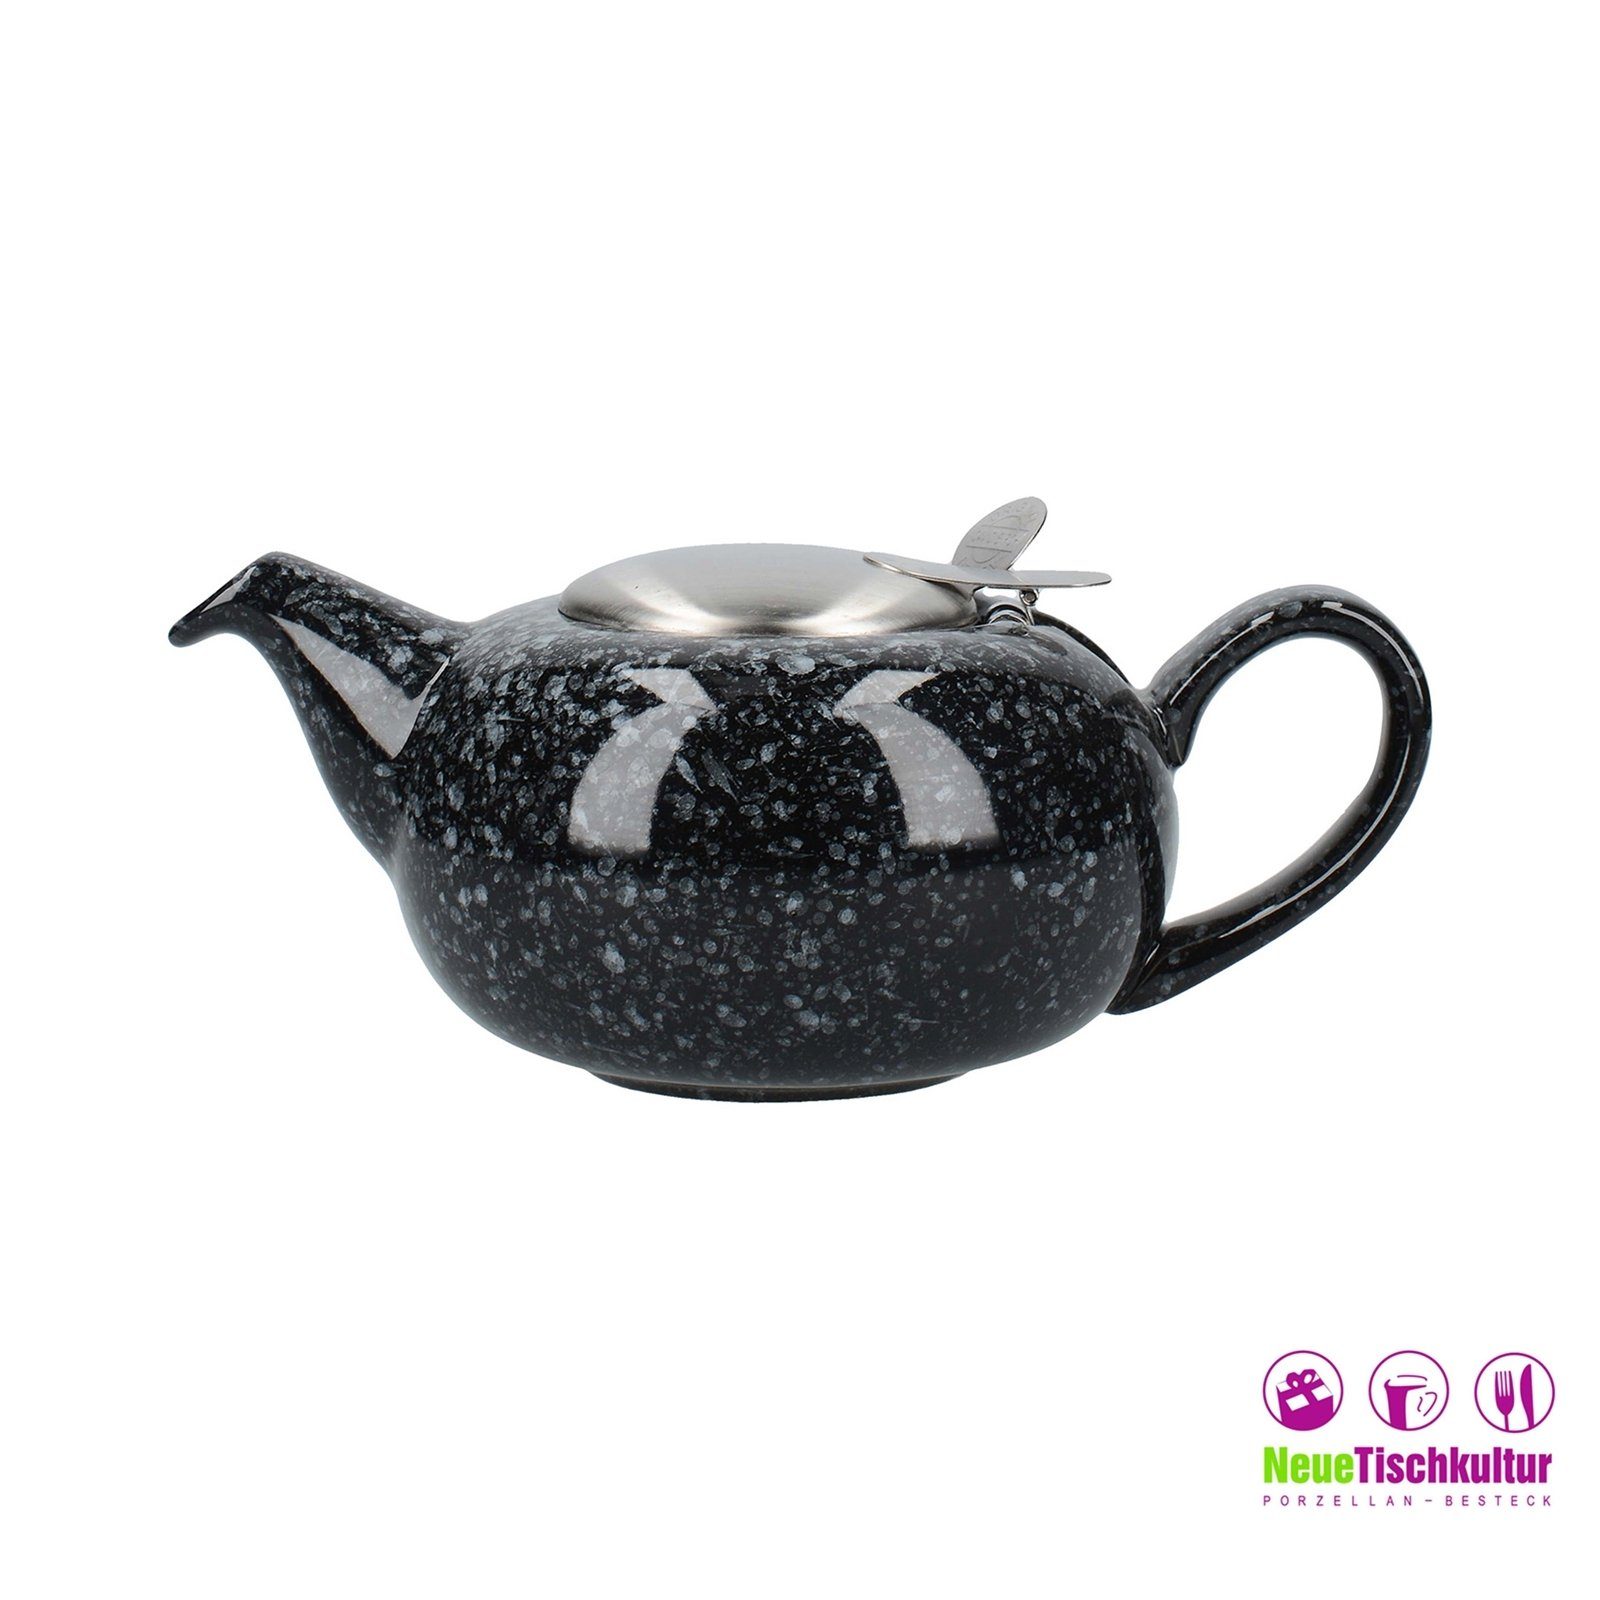 Neuetischkultur Teekanne Teekanne mit marmoriert Schwarz 0.5 Sieb, 500 ml, 2 Keramik, Tassen l